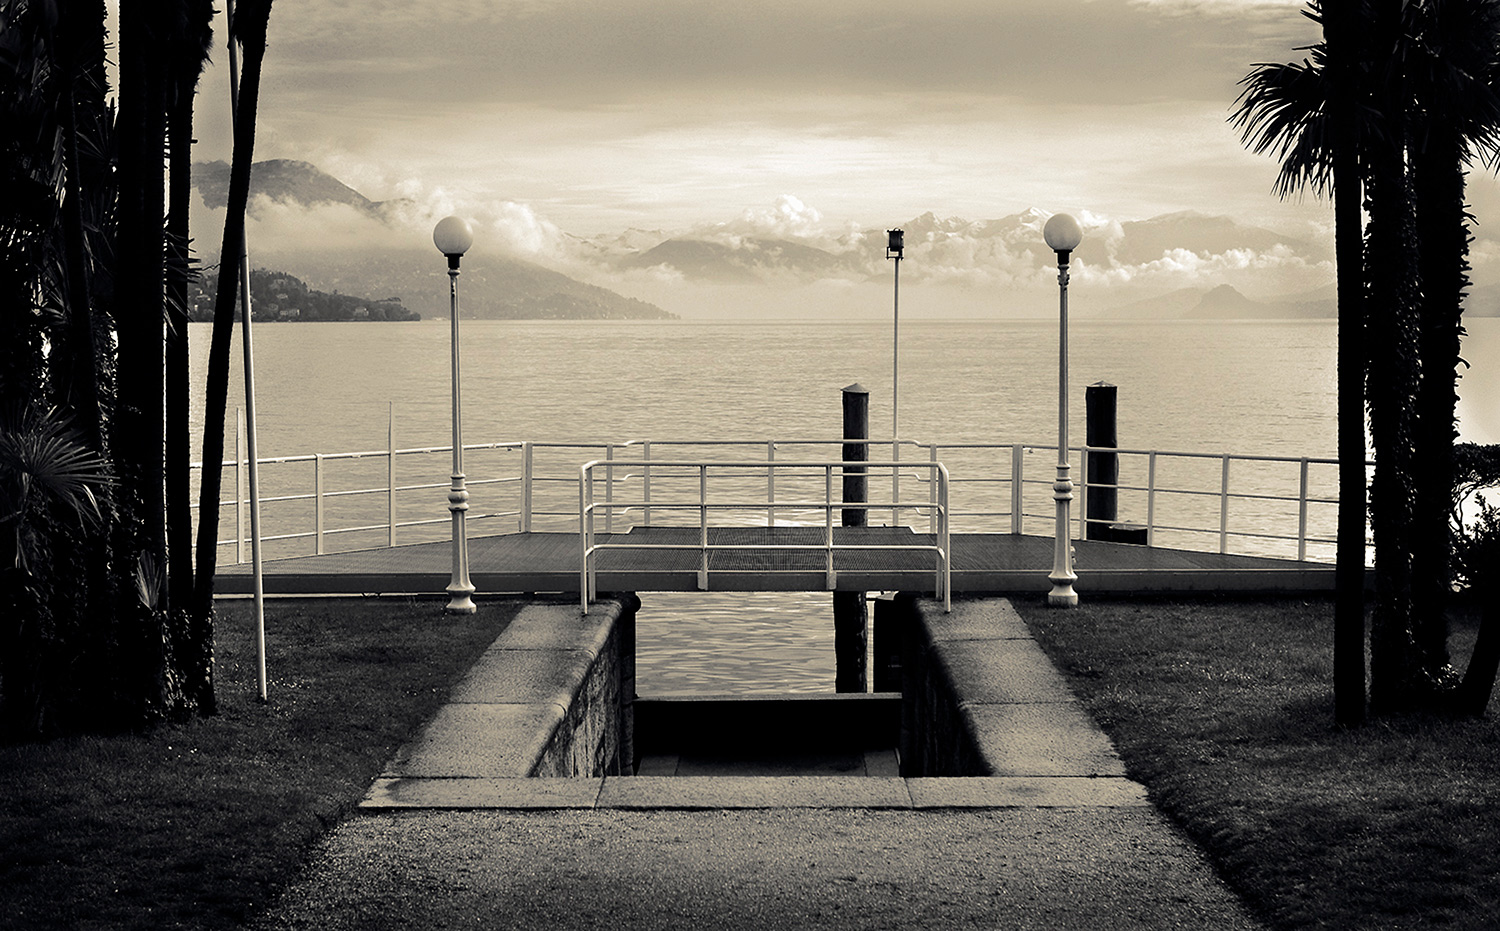 Lake Maggiore - Italy